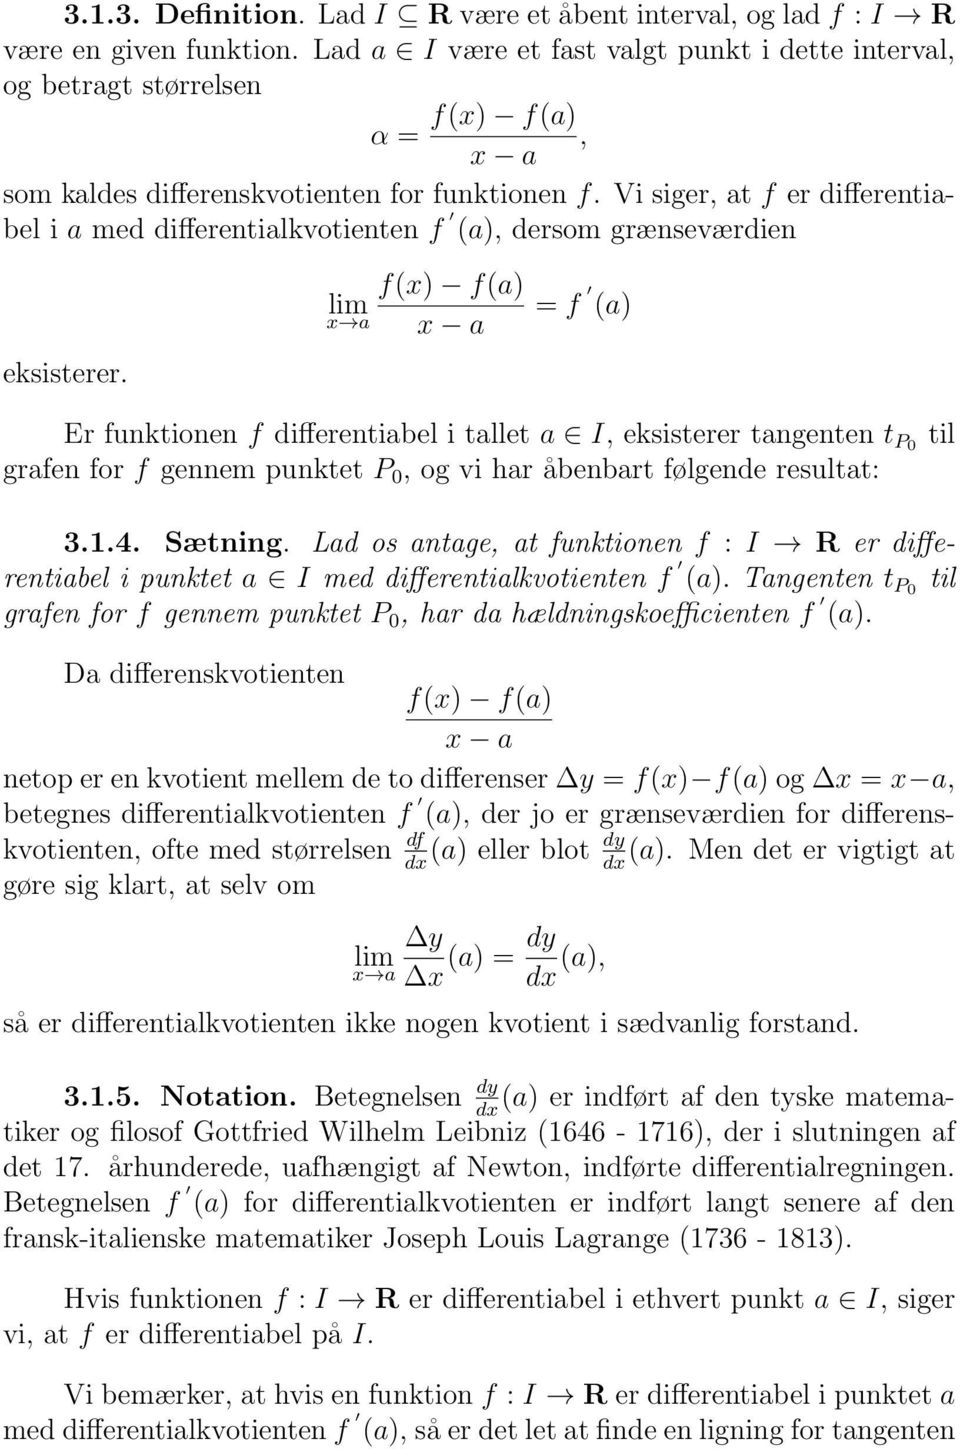 Vi siger, at f er differentiabel i a med differentialkvotienten f (a), dersom grænseværdien eksisterer.